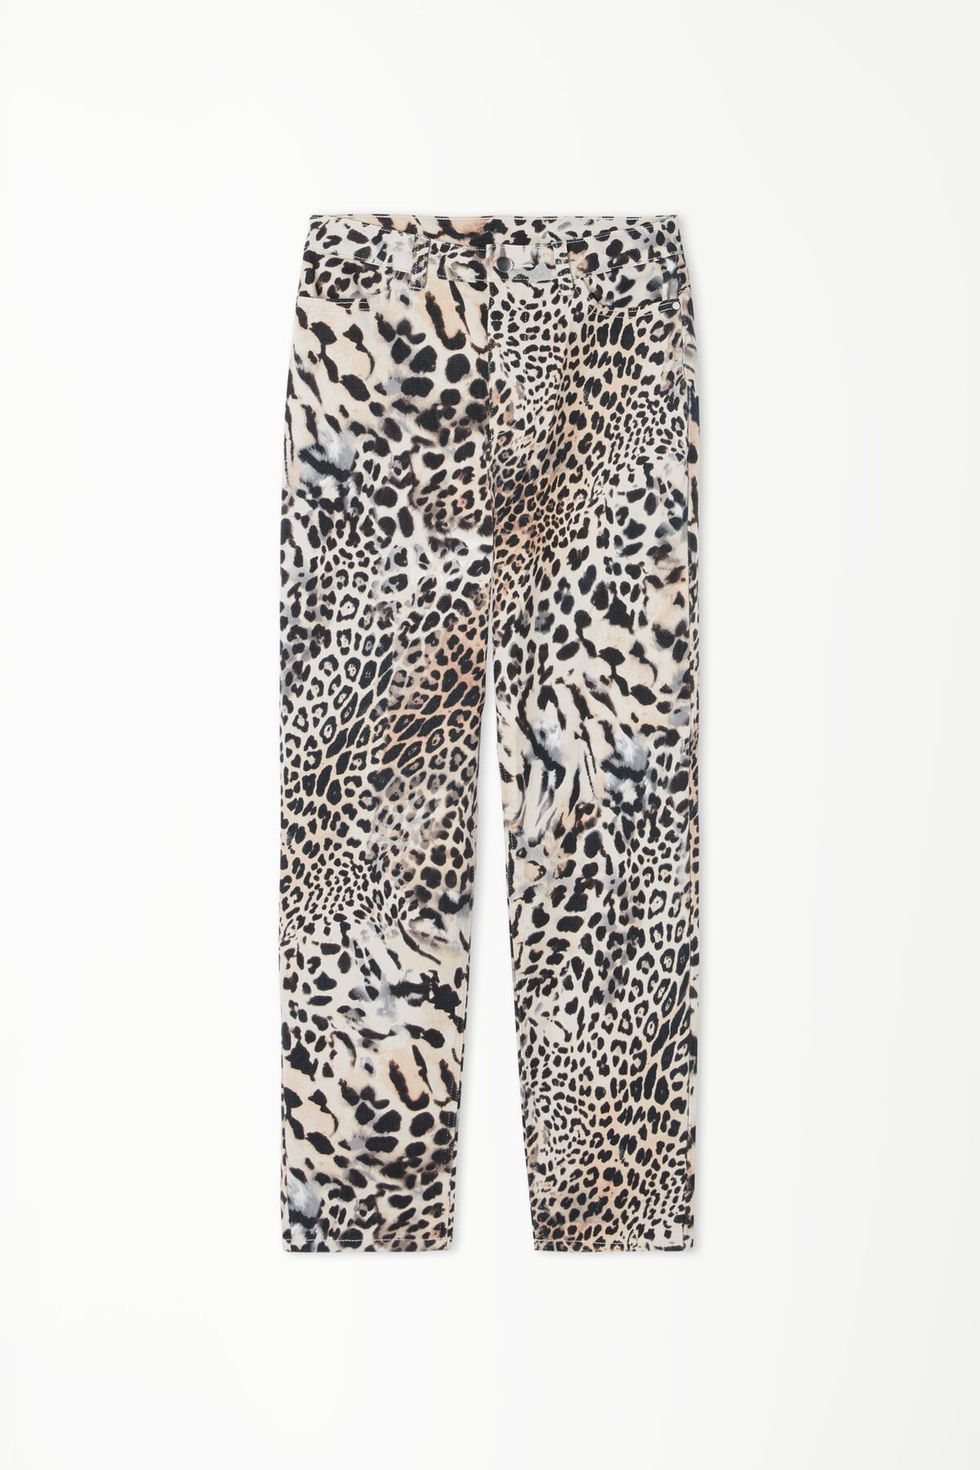 Pantalón de Leopardo